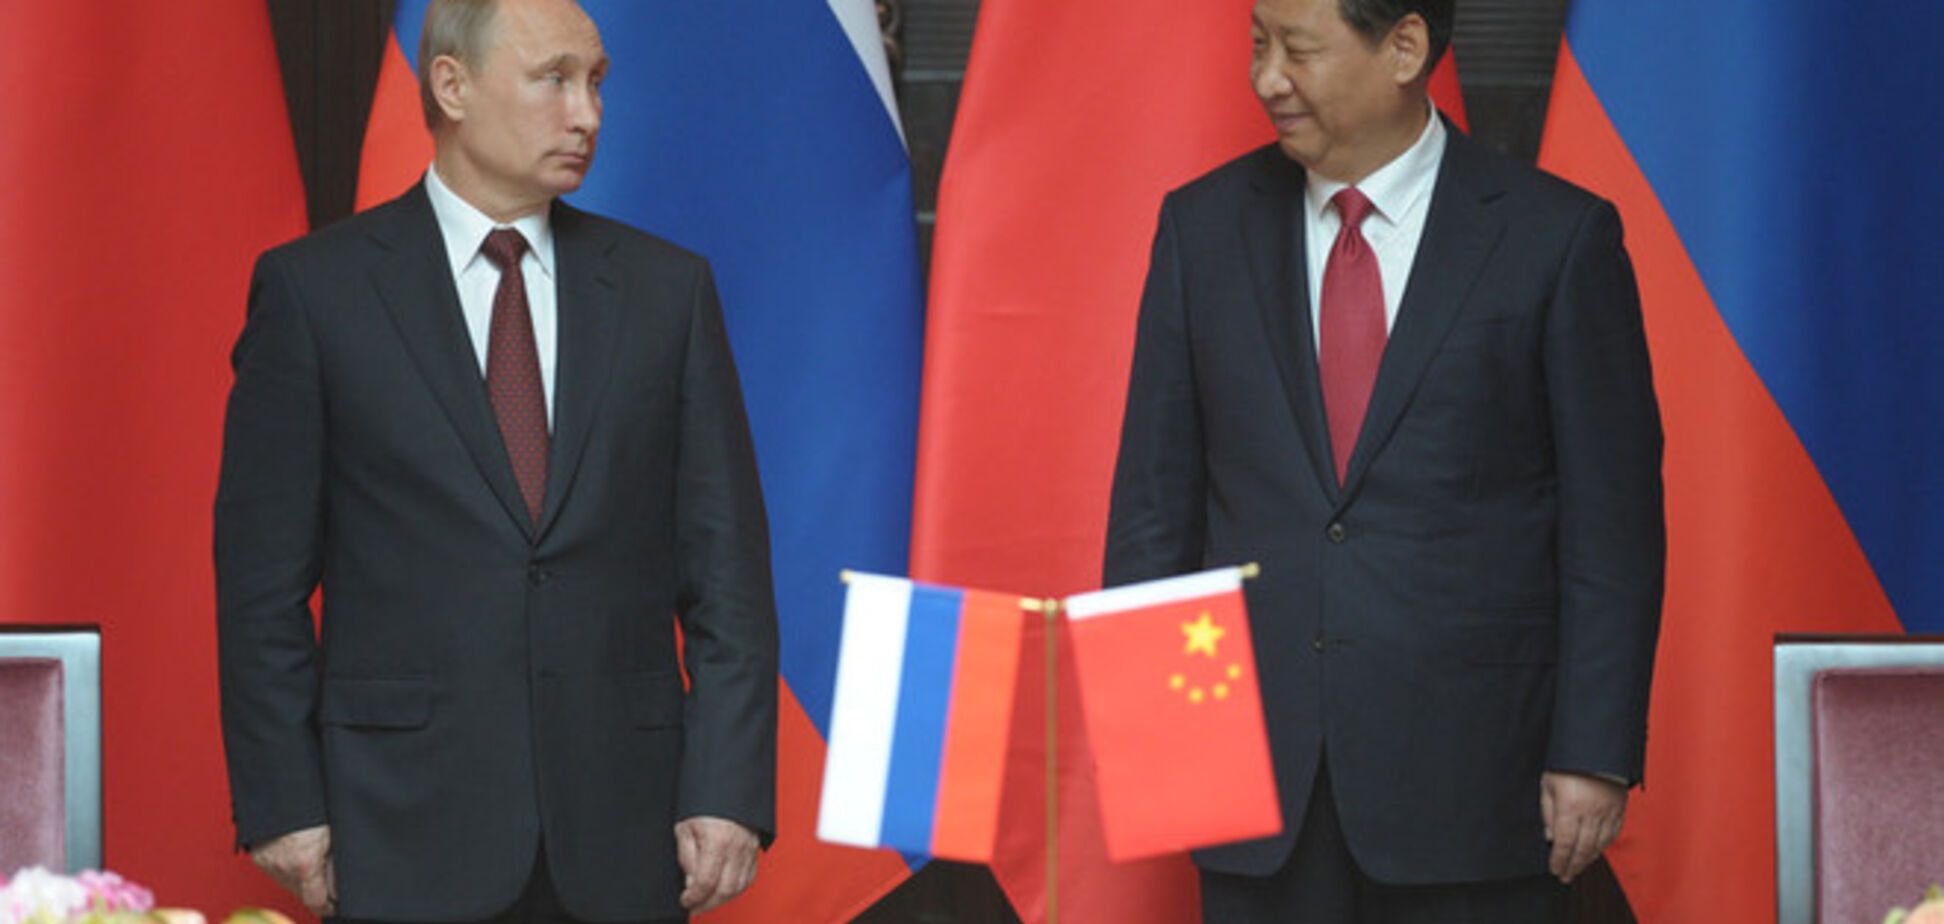 Після подій в Україні Китай не поспішає підписувати газовий контракт з Путіним - Нємцов